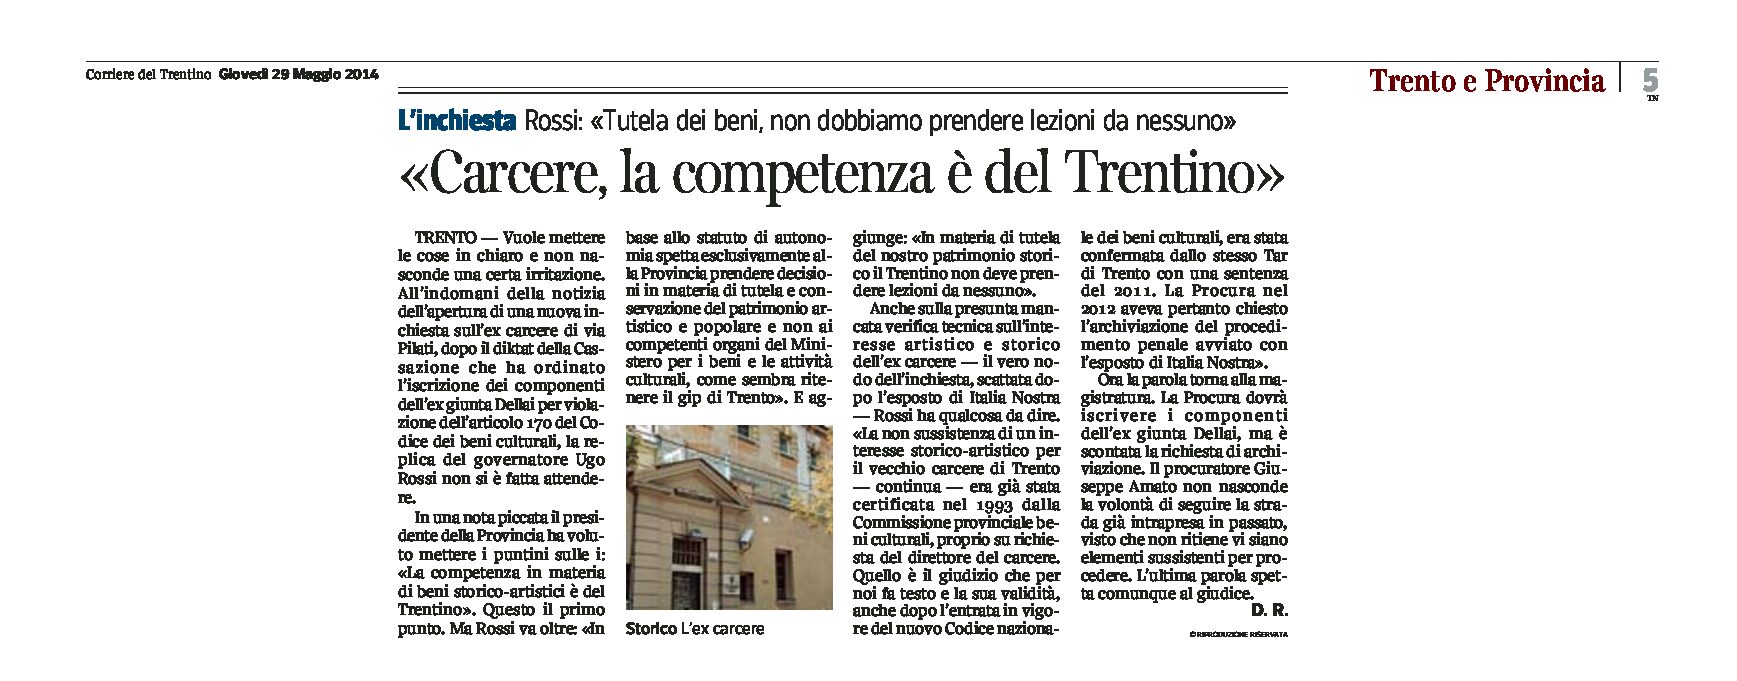 Trento: Rossi “Carcere, la competenza è del Trentino”